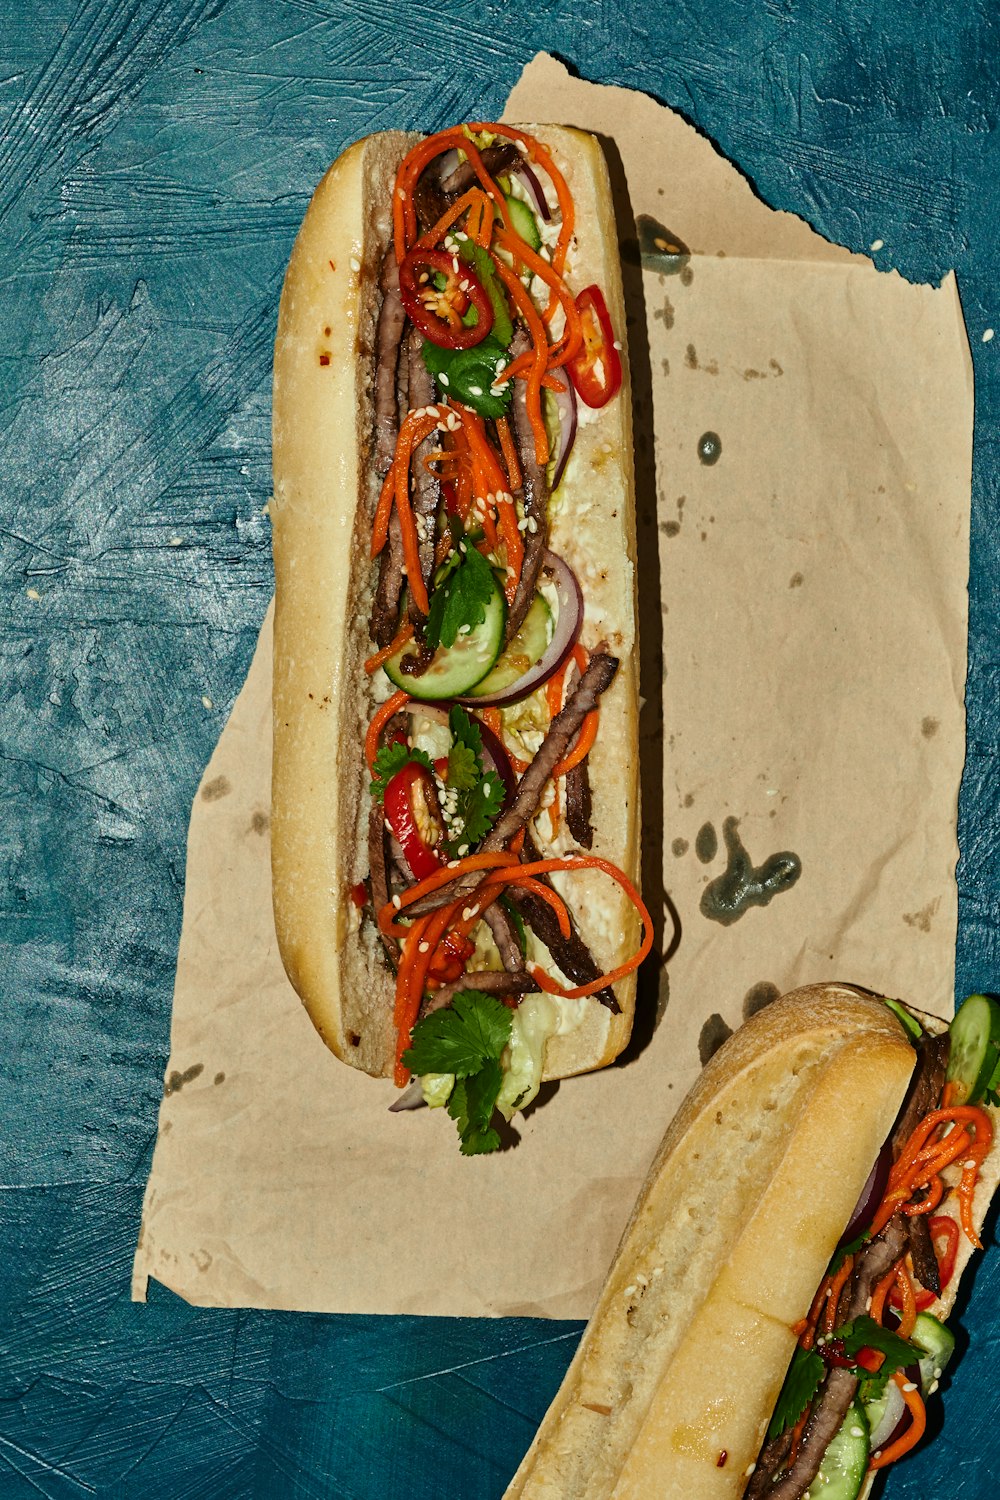 deux hot-dogs avec des garnitures différentes assis sur un morceau de papier ciré